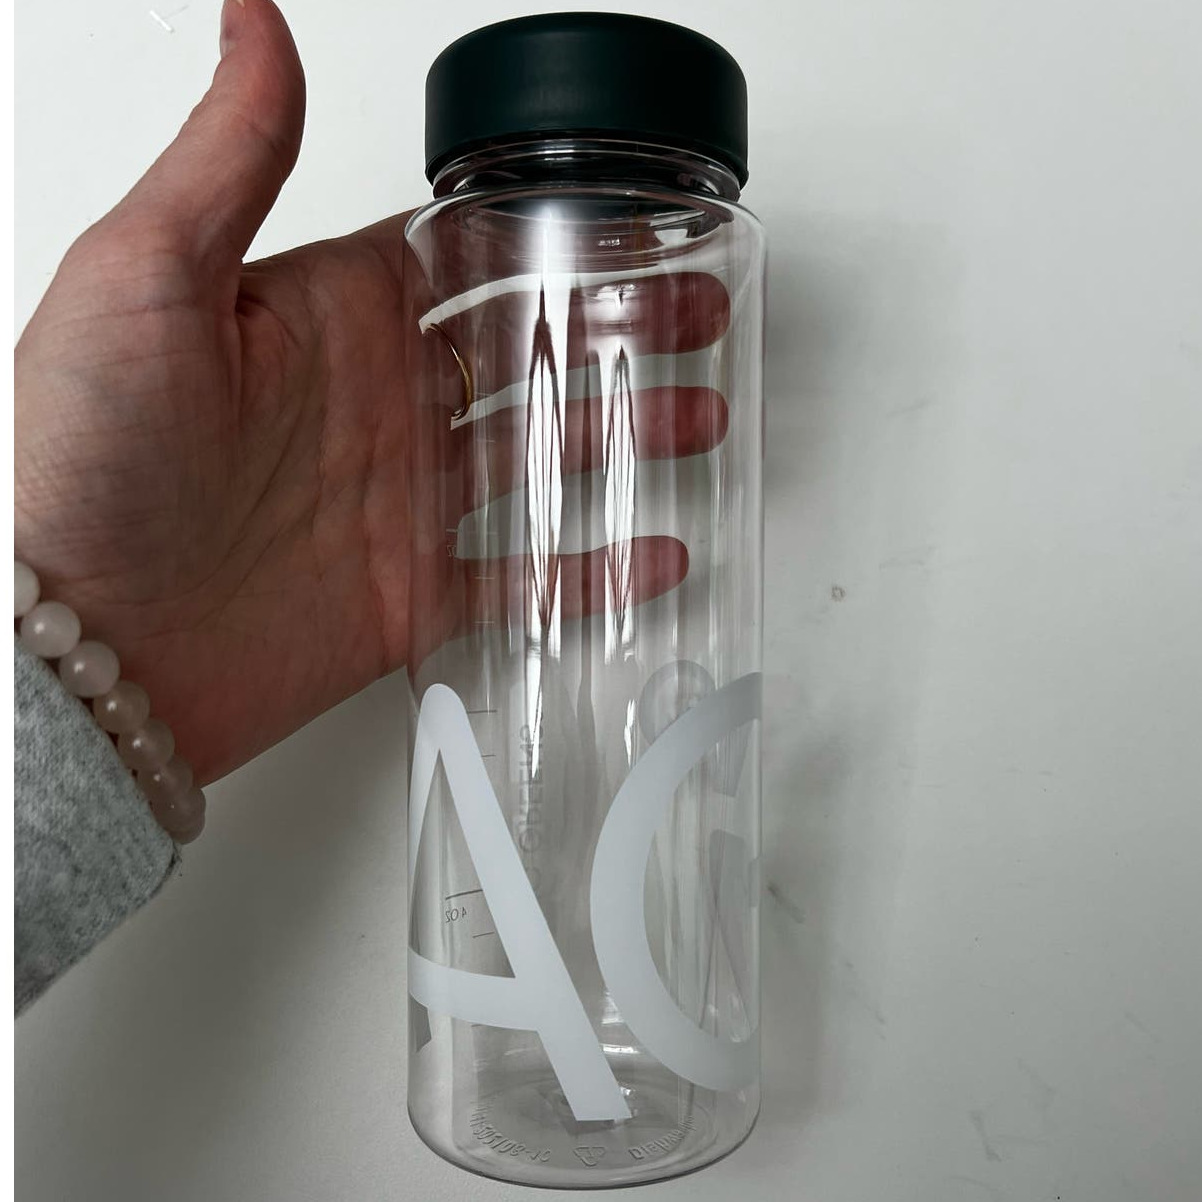 AG1 Athletic Greens Plastic Water Bottle, Dishwasher Safe